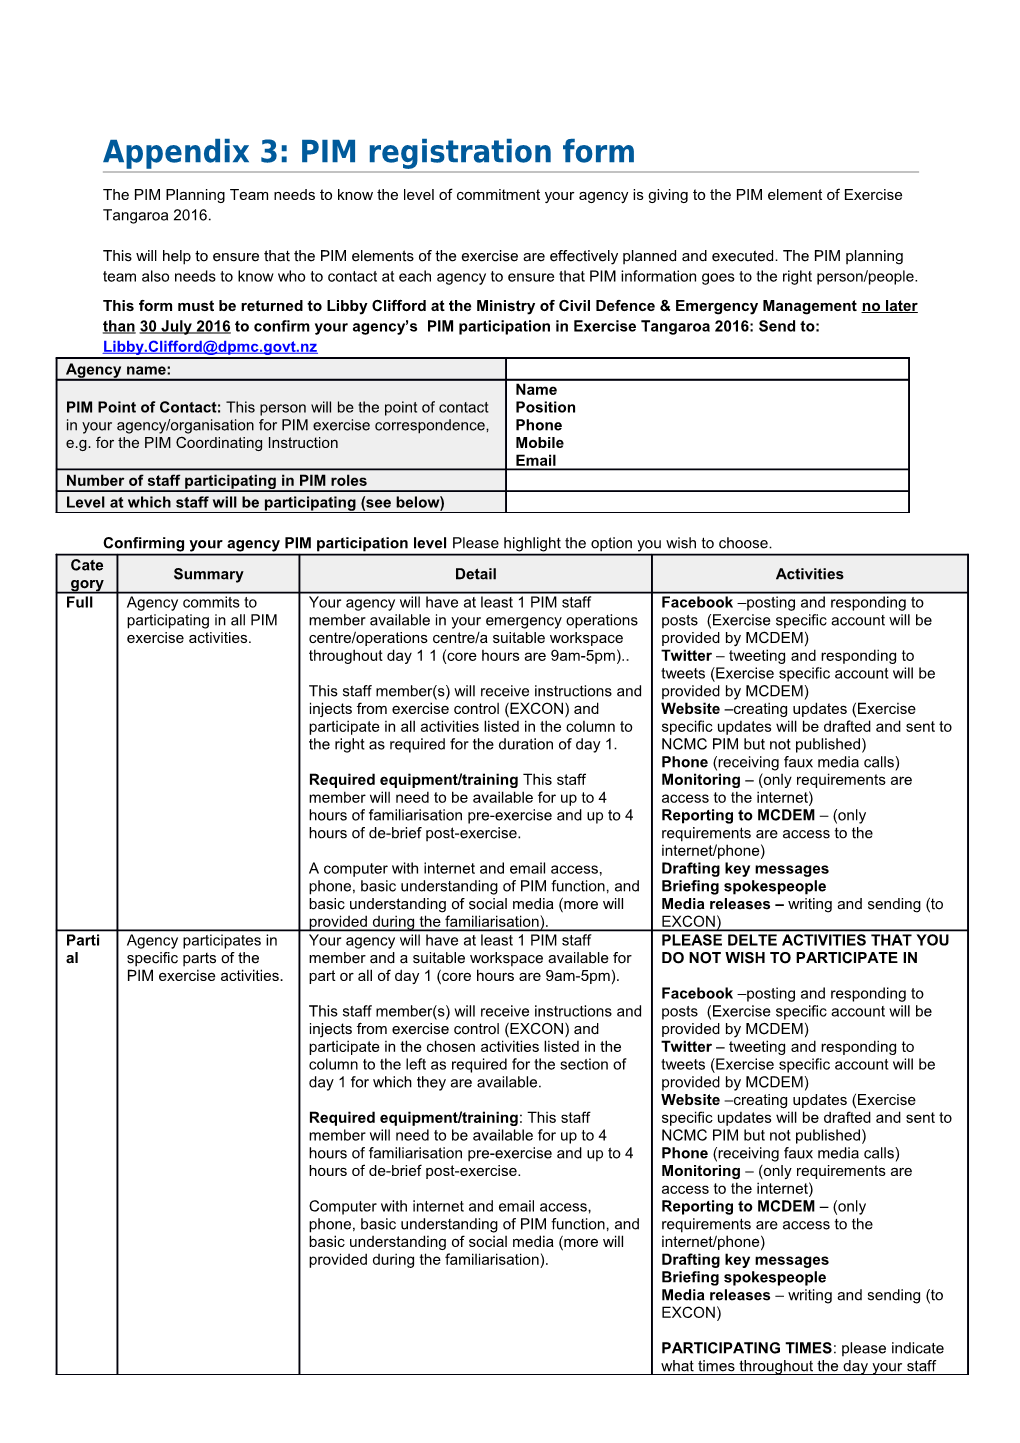 Appendix 3: PIM Registration Form